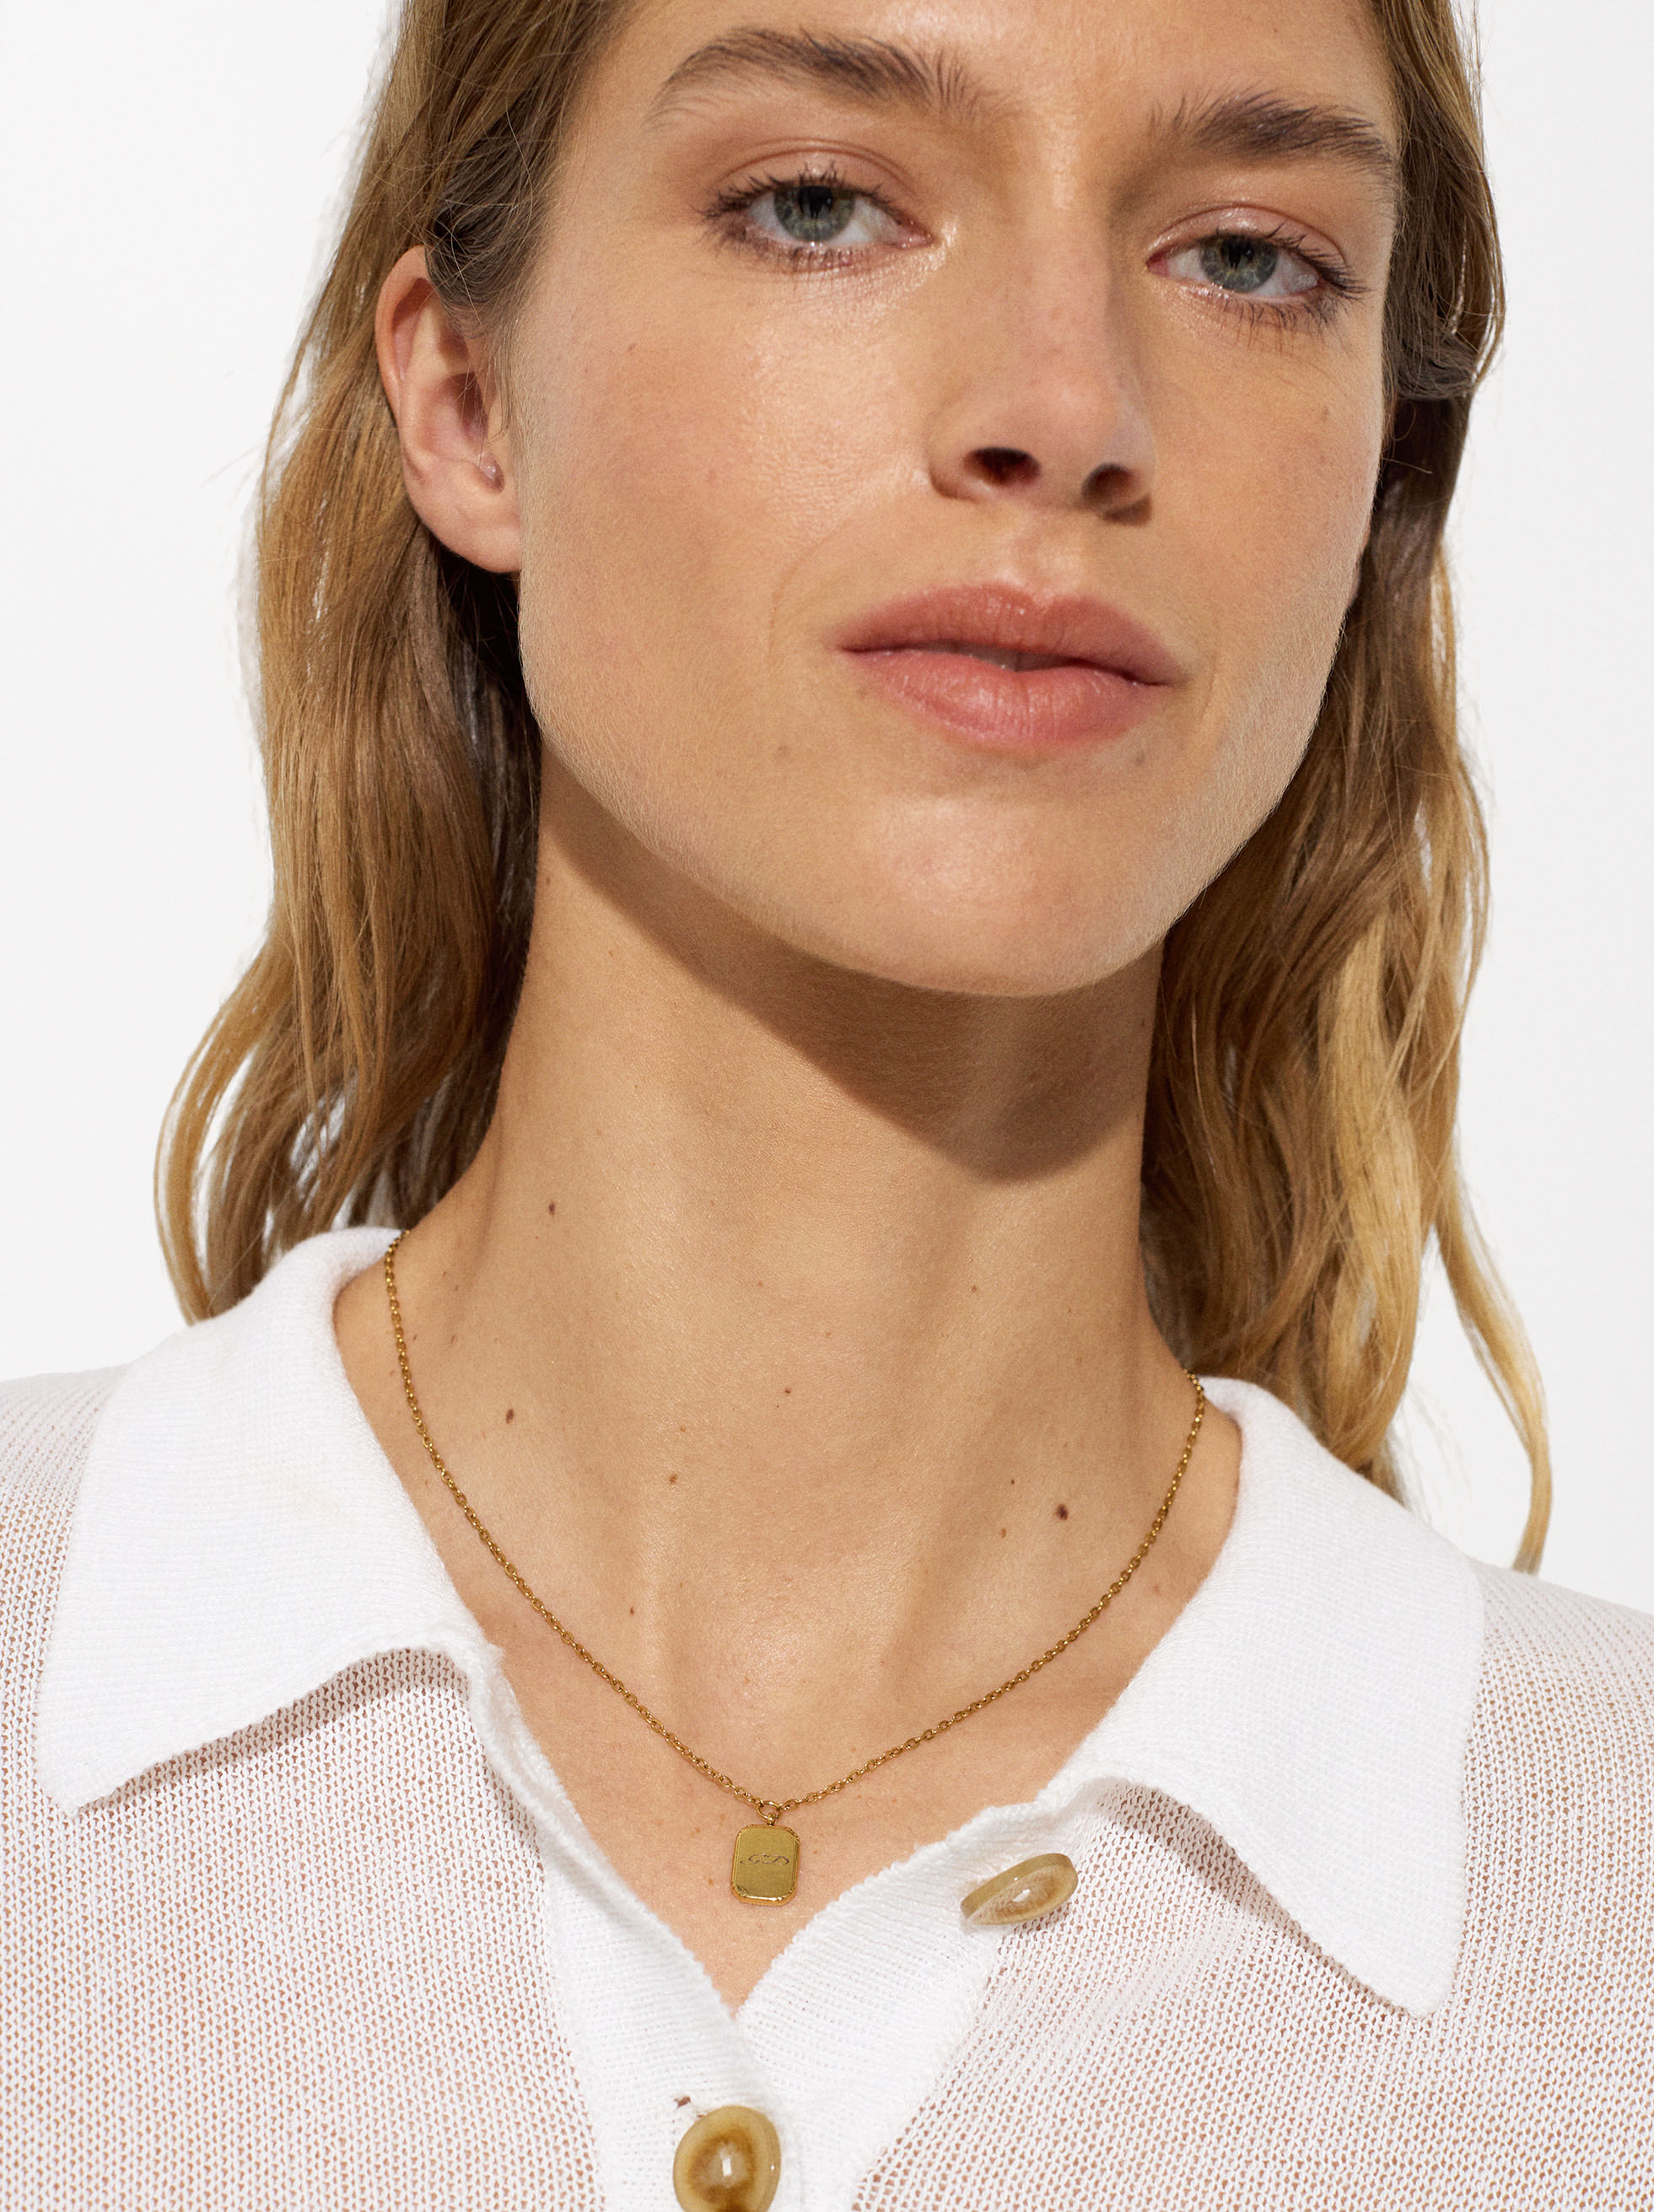 Exclusivo Online - Collar De Acero Inoxidable Dorado Con Colgante Personalizable image number 1.0